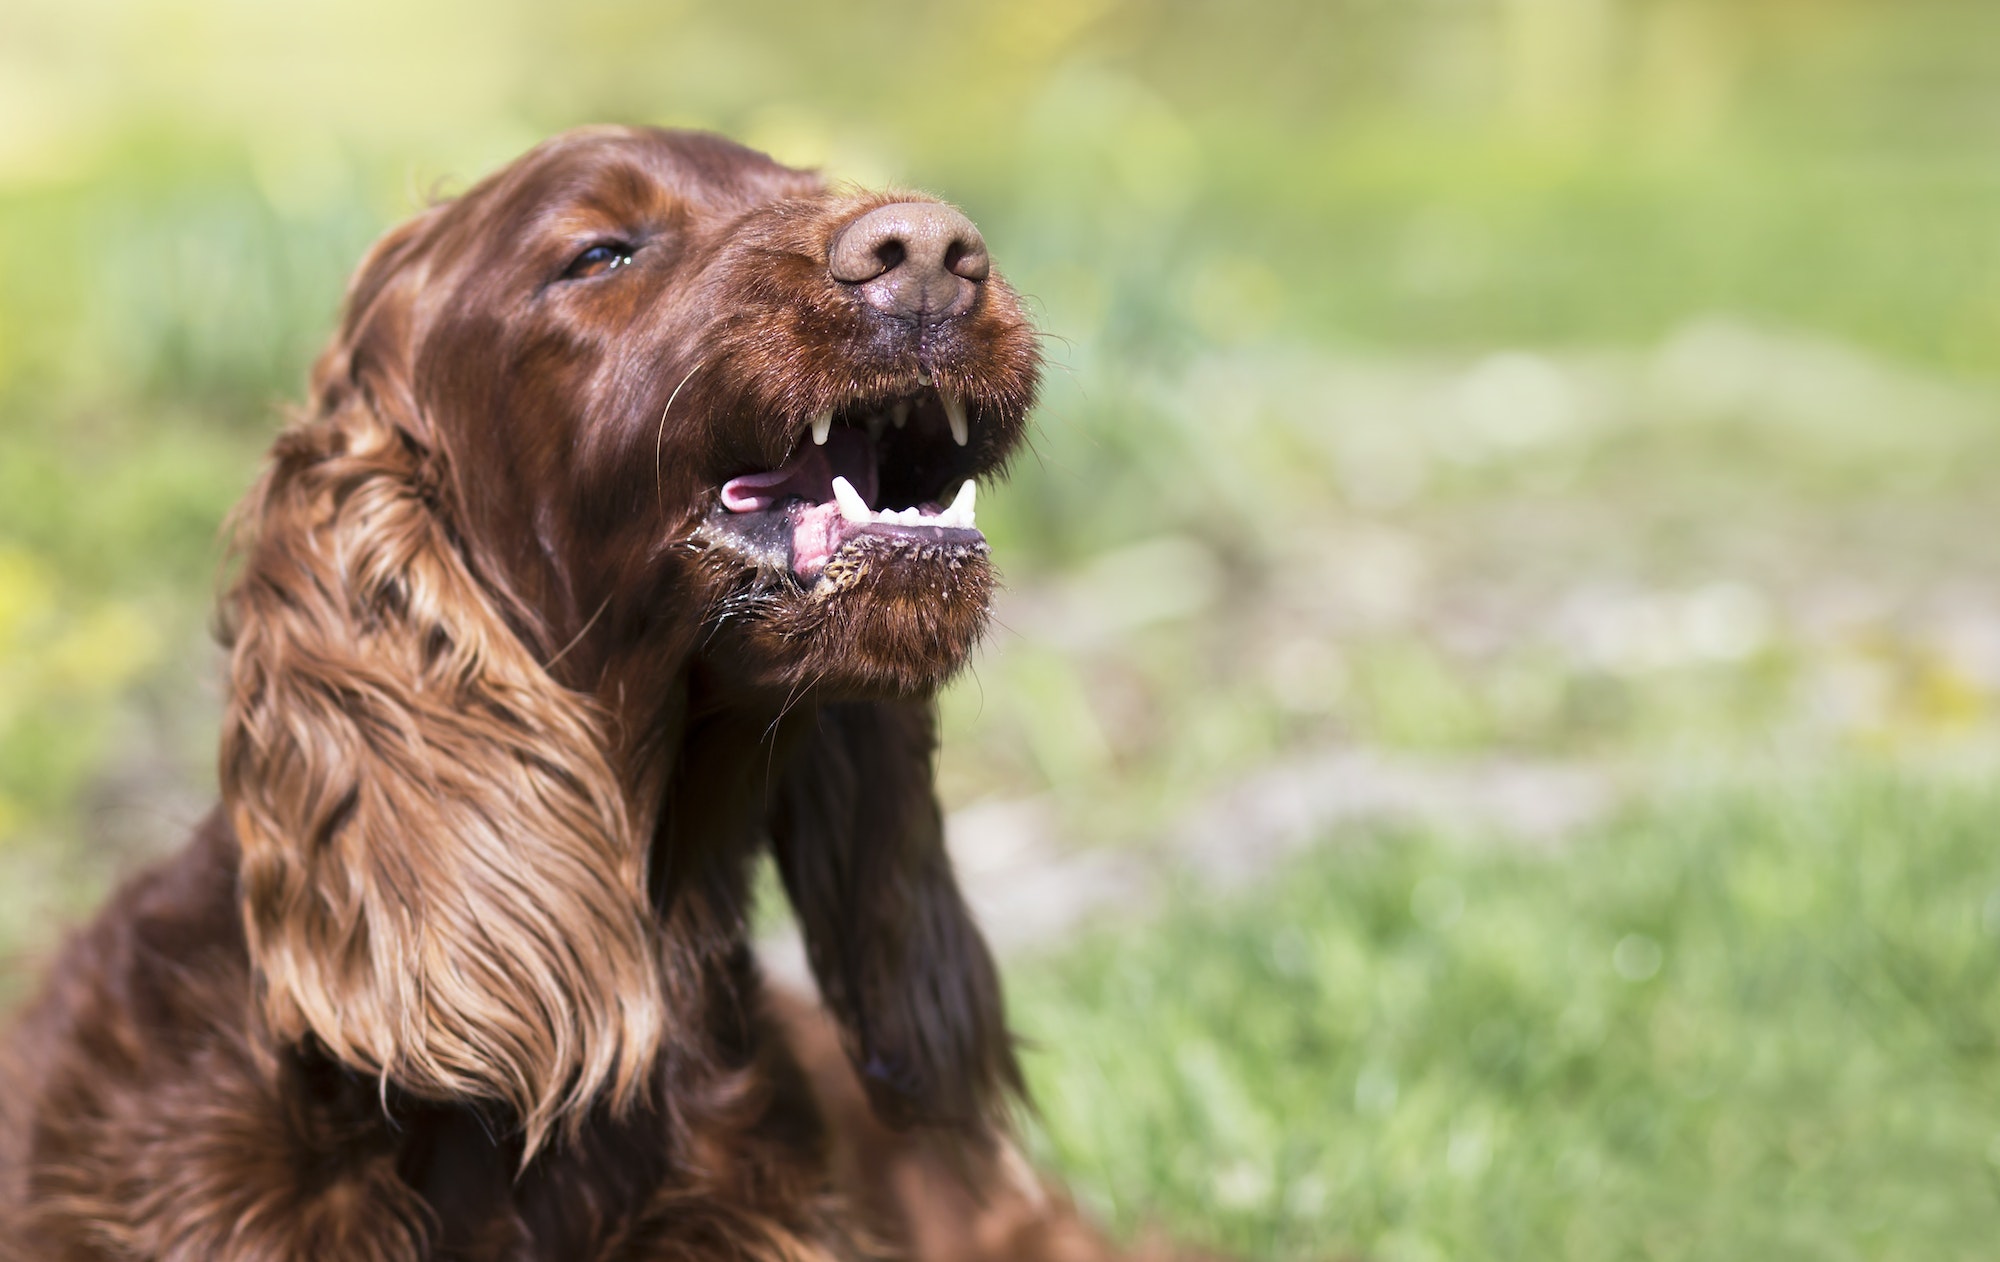 Funny barking pet dog showing his teeth